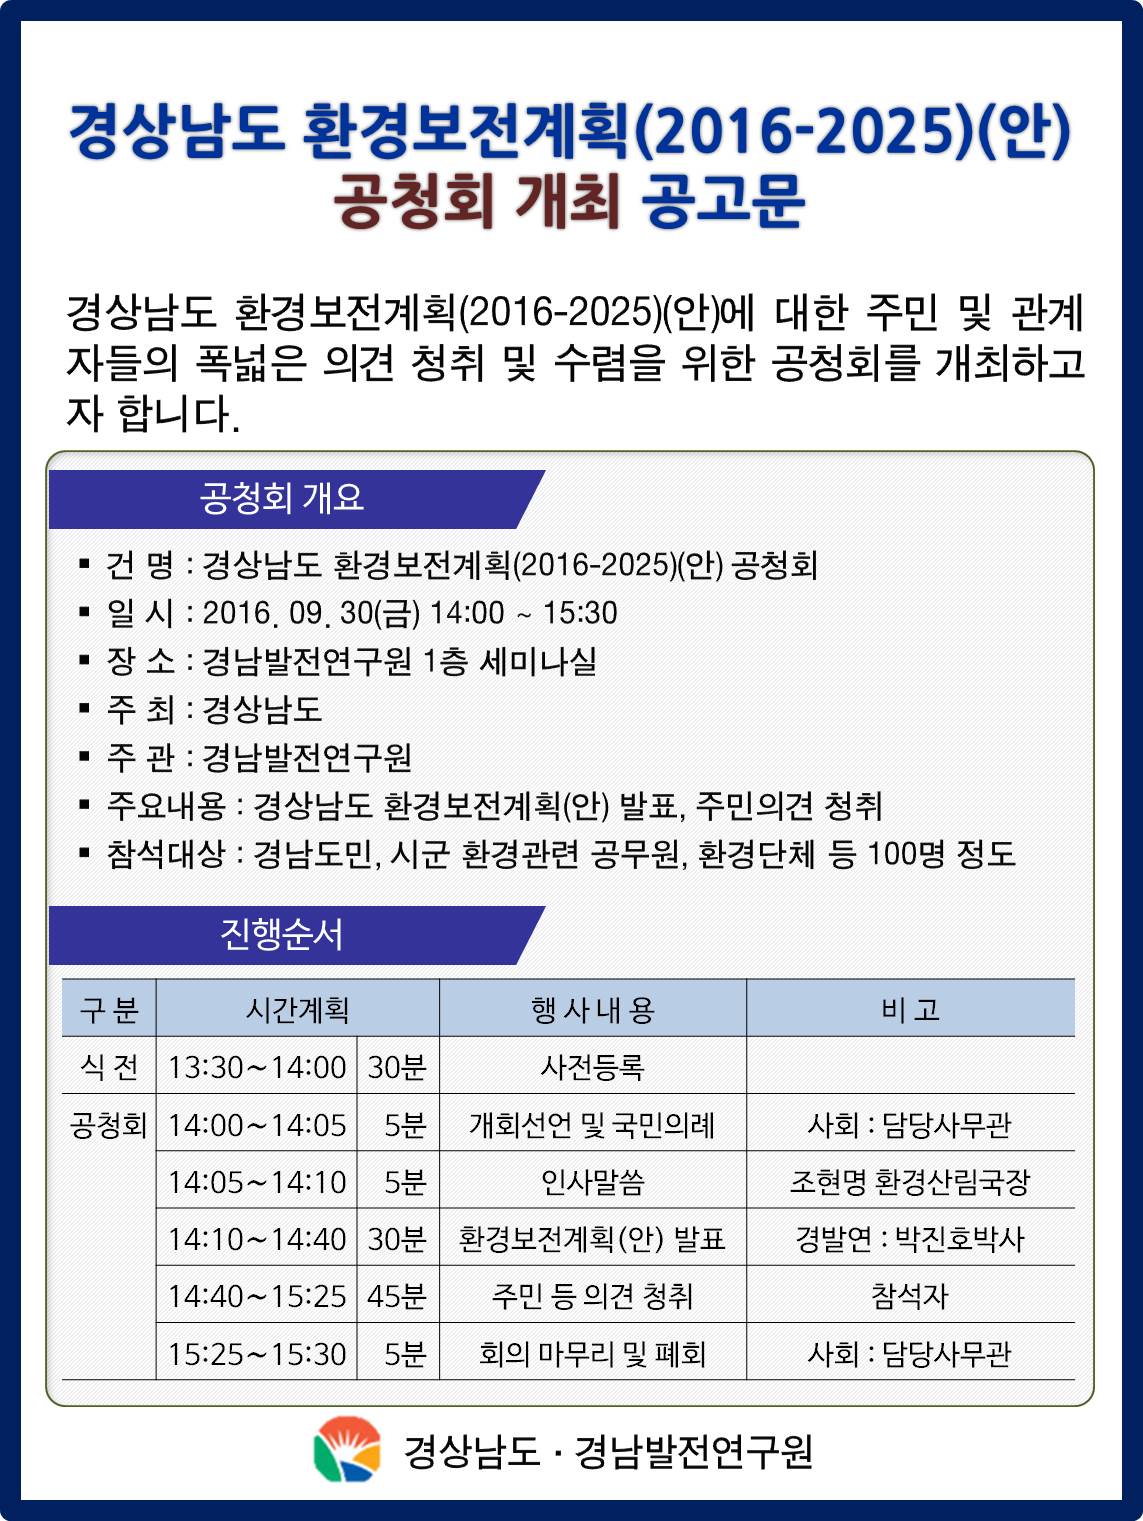 경상남도 환경보전계획 공청회 개최 공고문.jpg